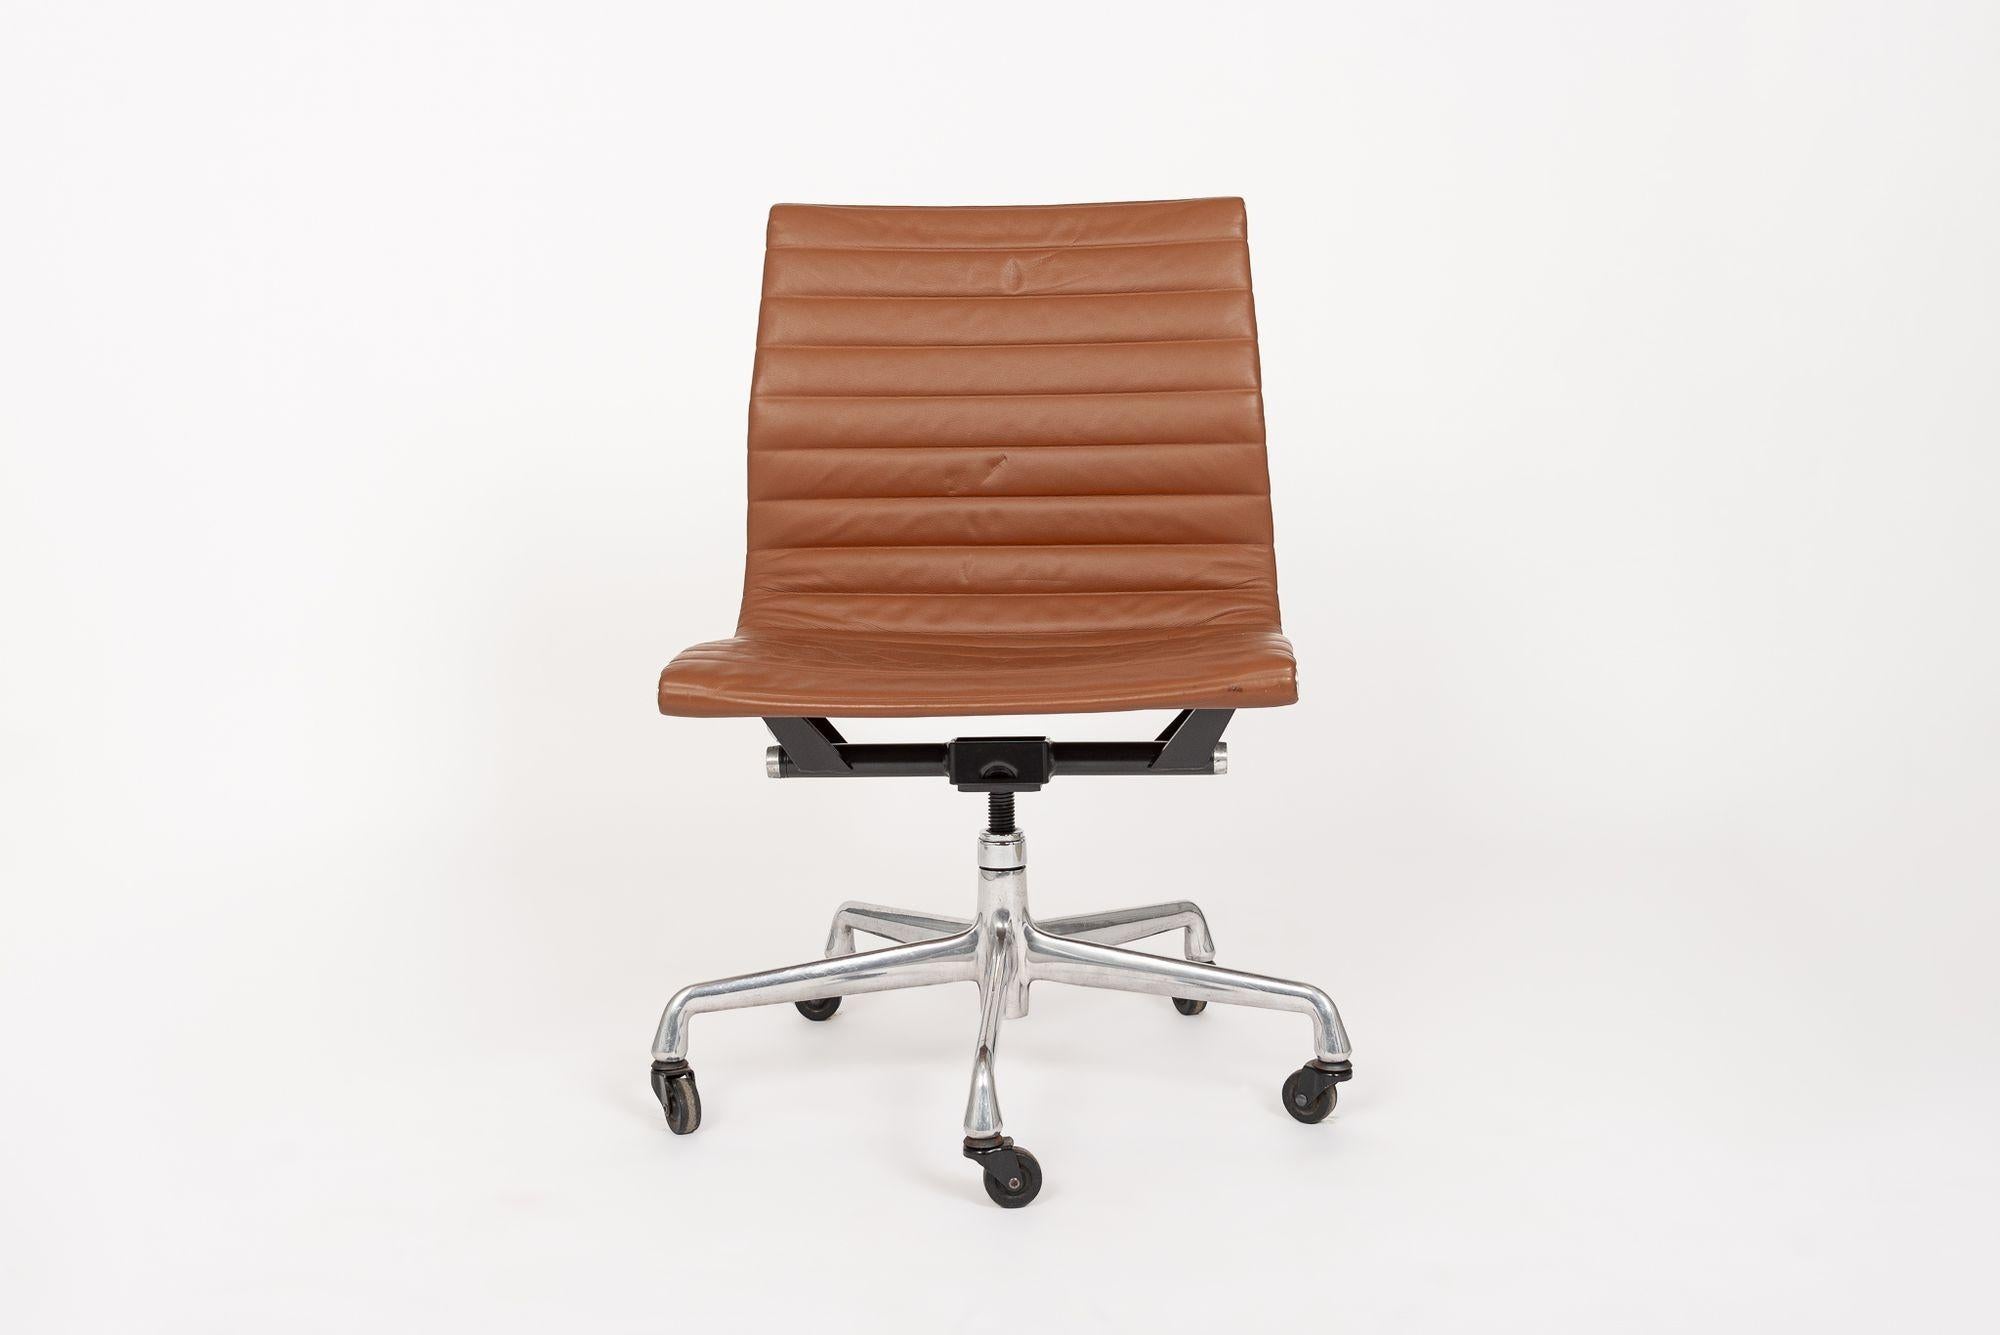 La chaise de bureau latérale Aluminum Group Thin Pad Management, conçue par Charles & Ray Eames pour Herman Miller, fait partie de la Collection Aluminum Group des Eames. Ces chaises originales sont le fruit de l'expérimentation des Eames avec